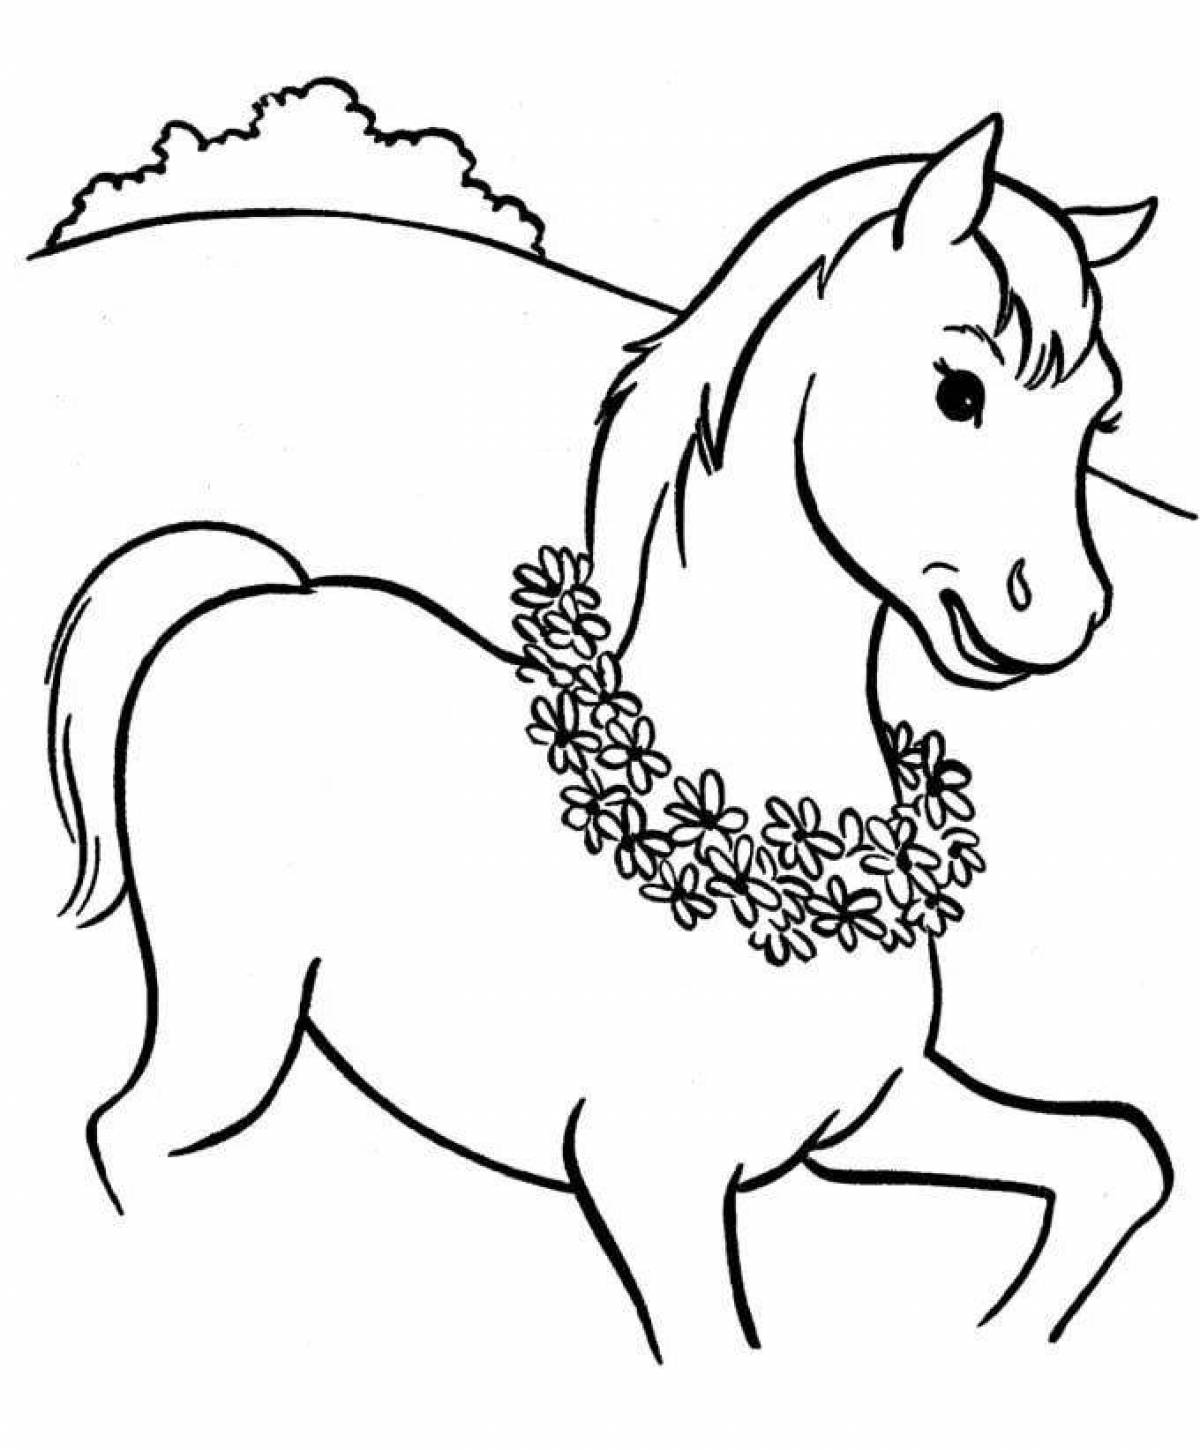 Черная скачущая лошадь-раскраска для детей